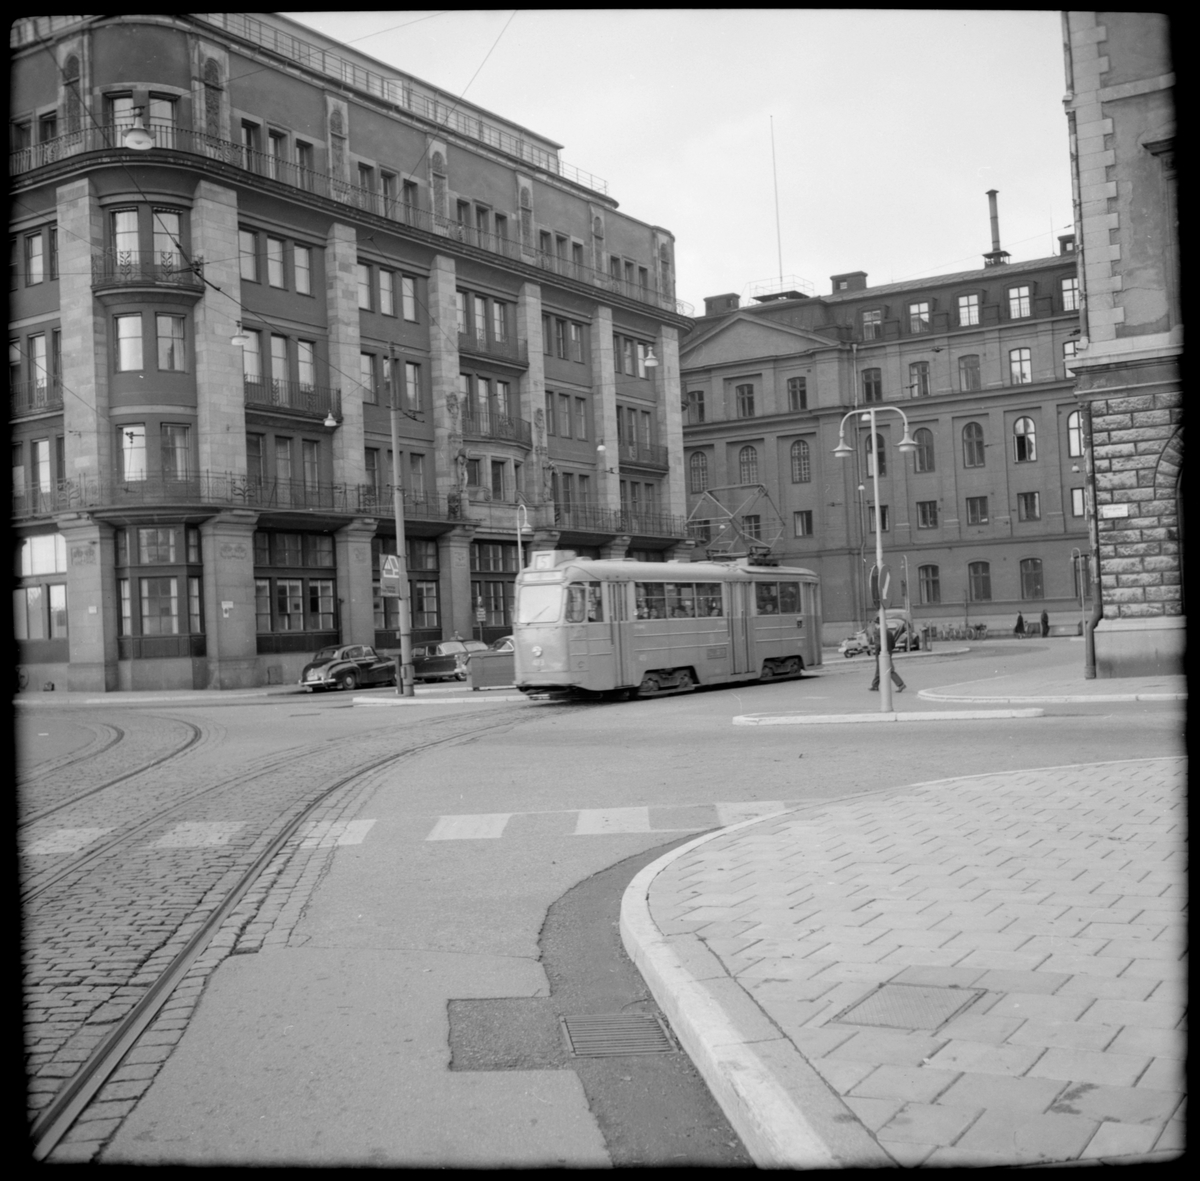 Aktiebolaget Stockholms Spårvägar, SS A26 473 "mustang" linje 5 Karlberg - Gustaf Adolfs torg - Östra station på Fredsgatan.